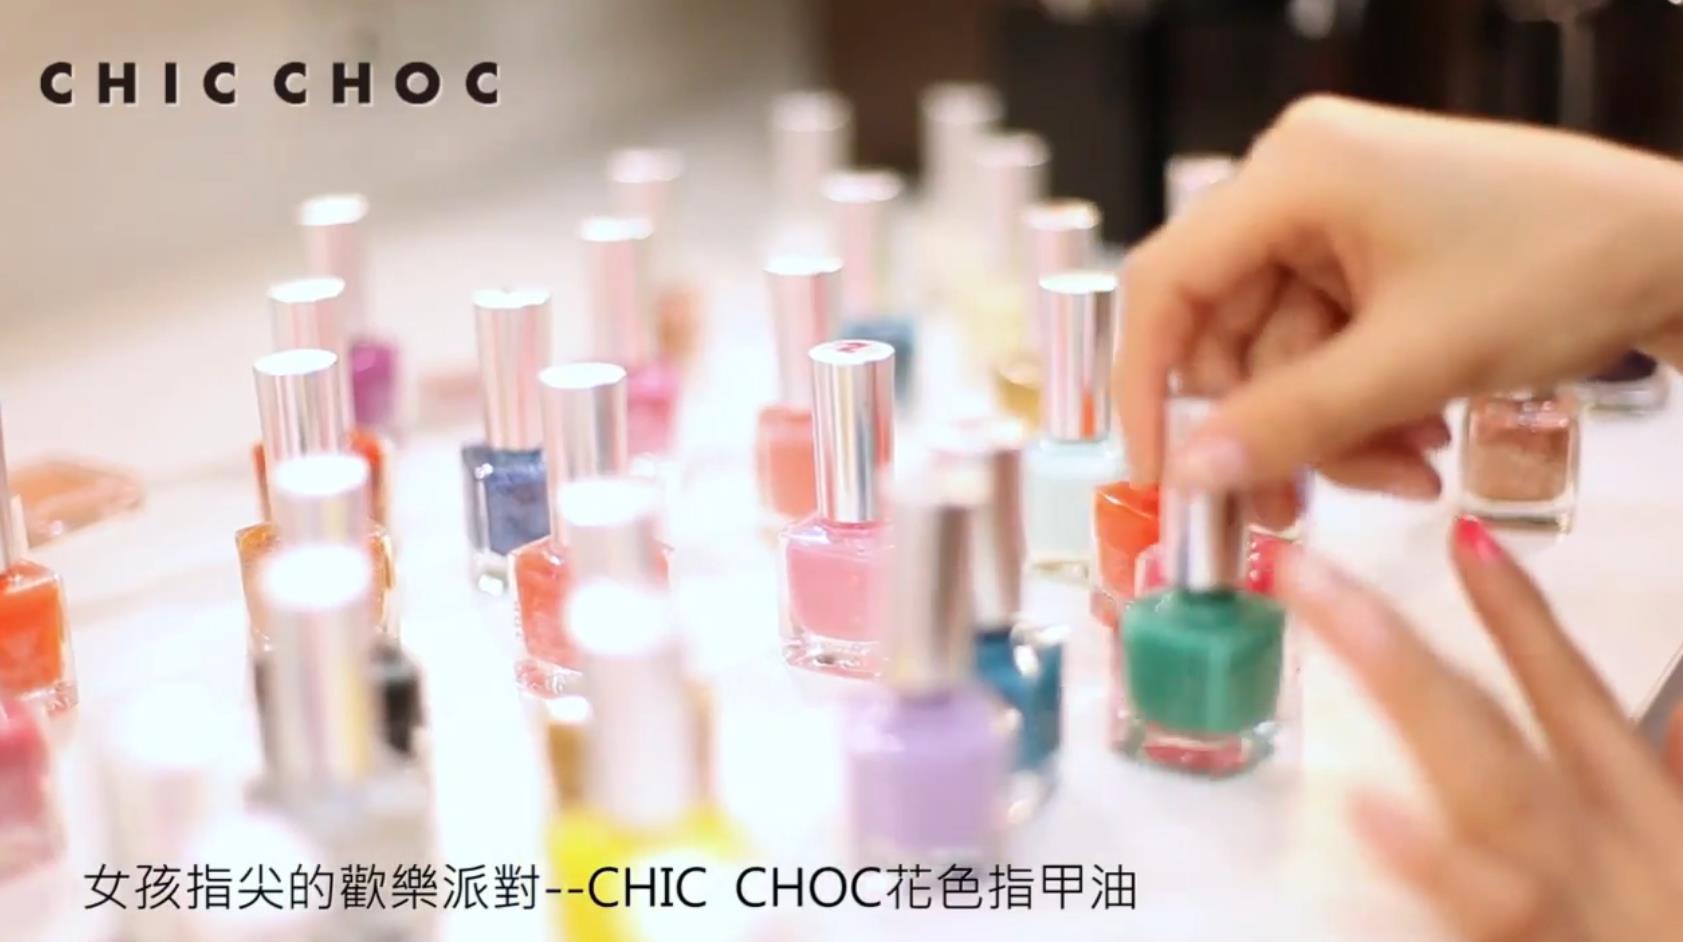 女孩指尖的欢乐派对CHIC CHOC花色指甲油广告